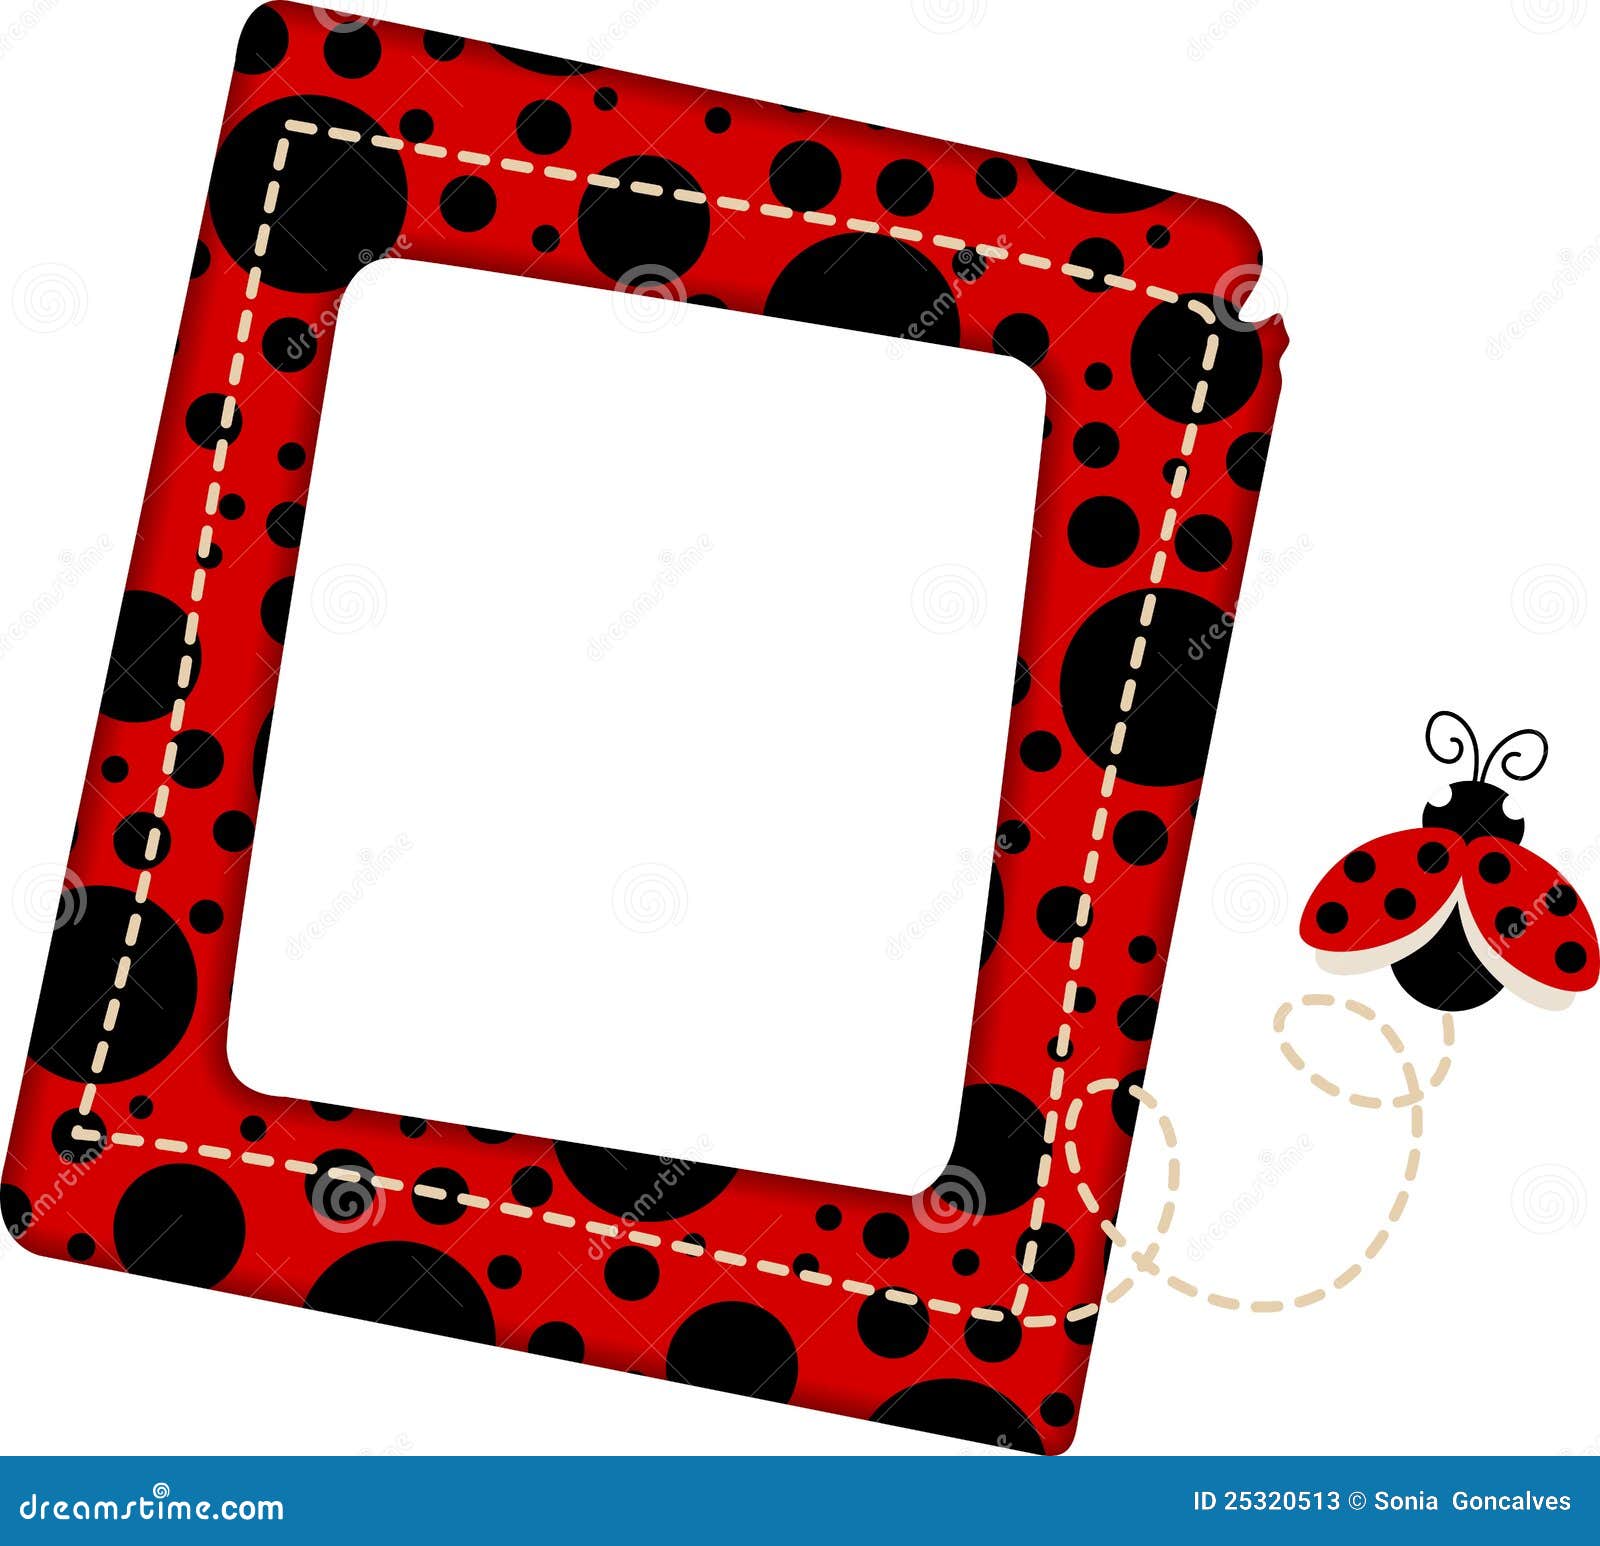 ladybug frame clipart - photo #18